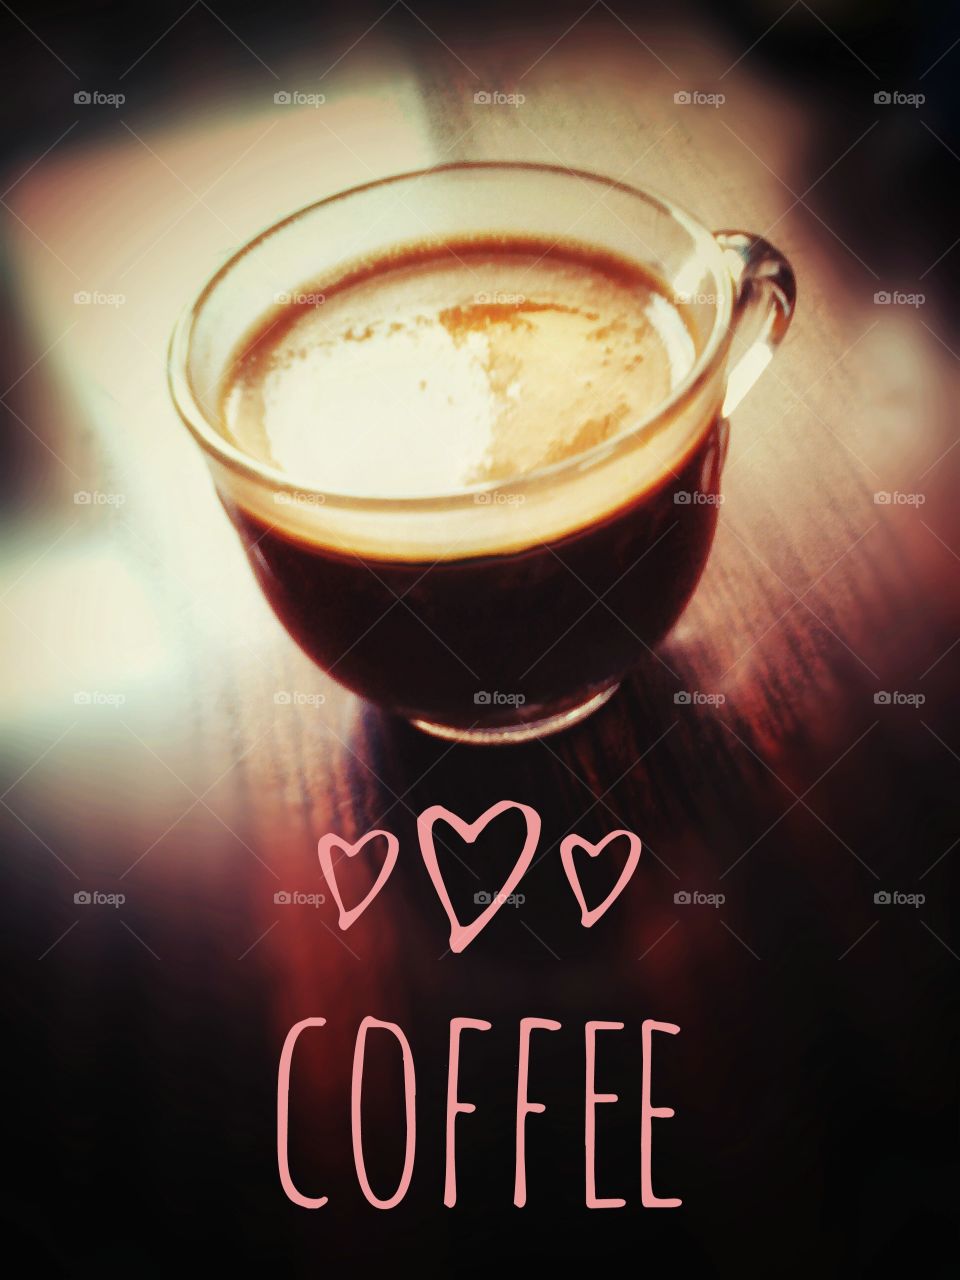 ☕ Coffee ☕